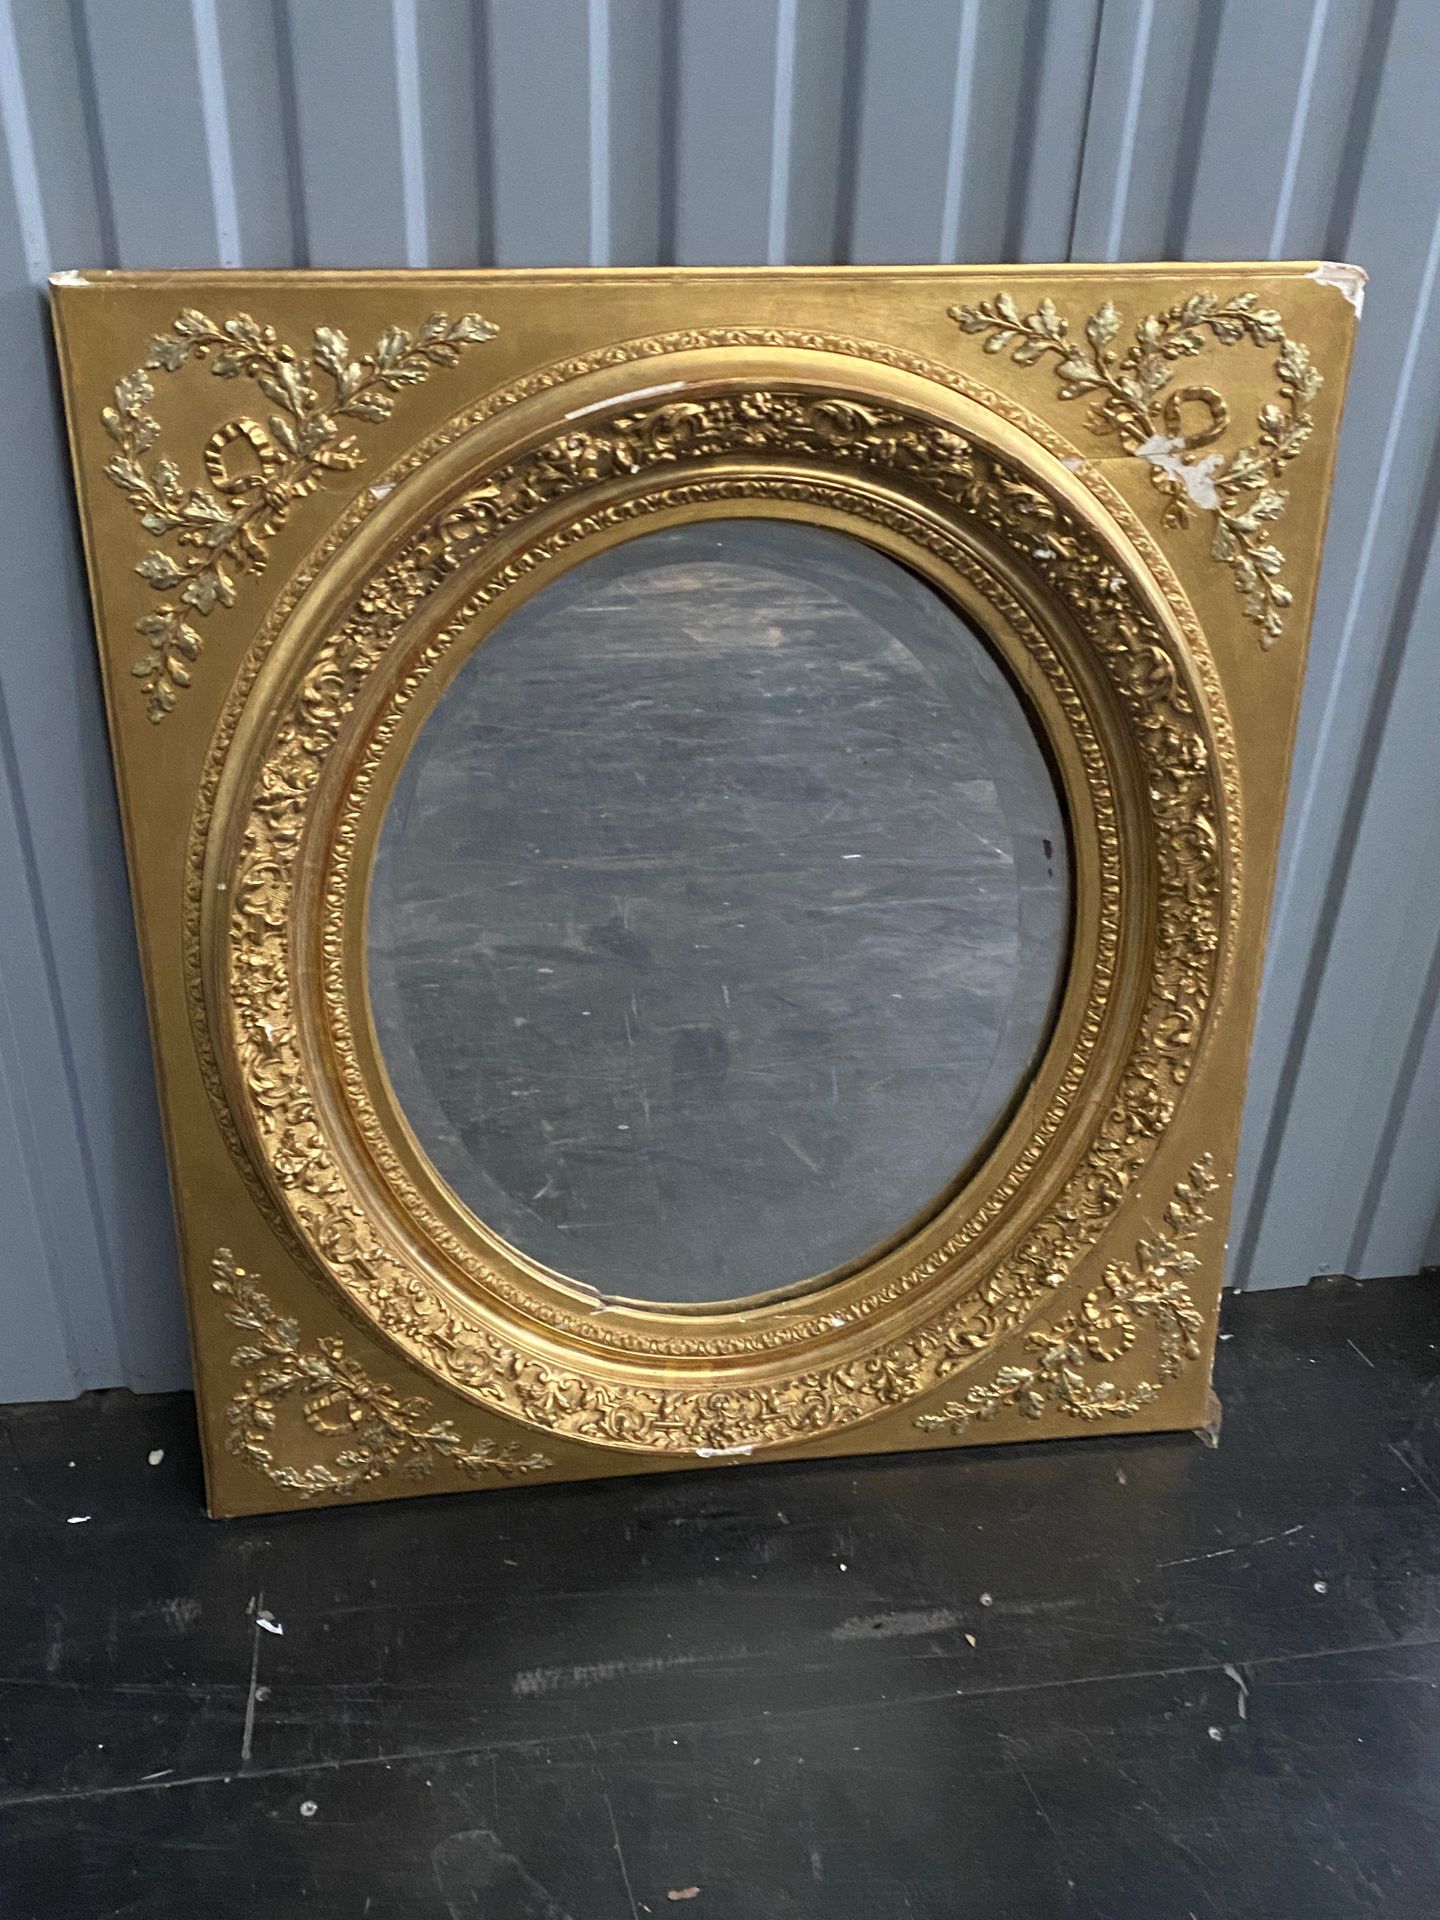 Null 长方形镀金边框的椭圆视镜

拿破仑三世时期

框架的损坏

86 x 74 cm